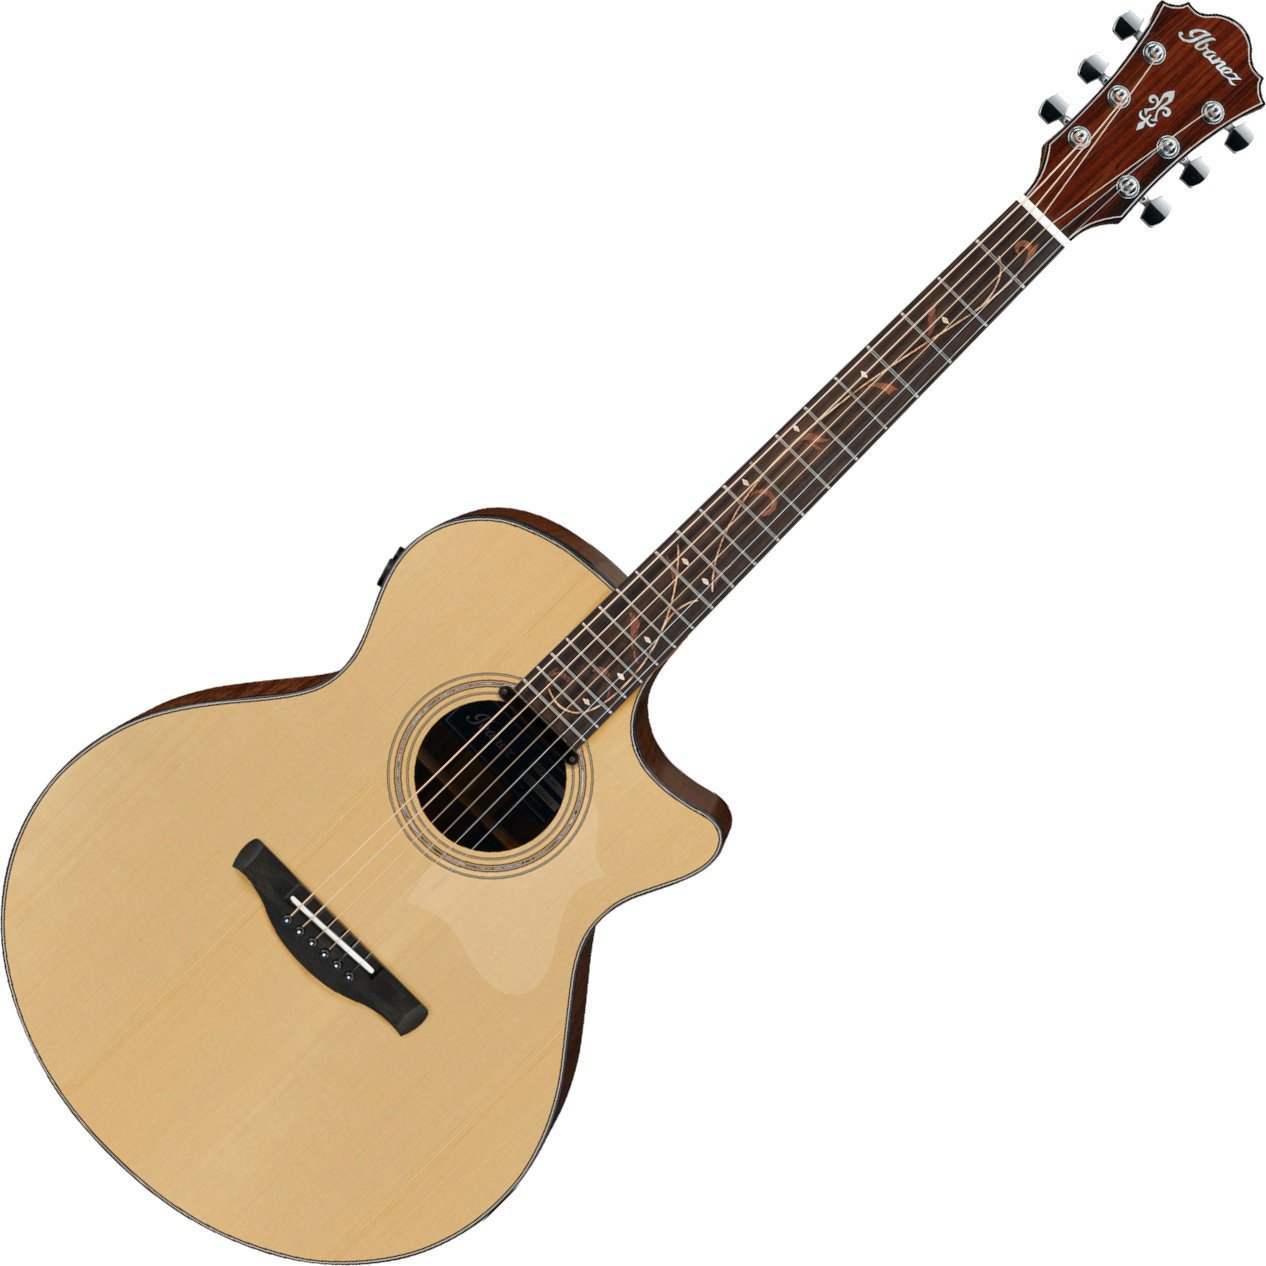 Ηλεκτροακουστική Κιθάρα Jumbo Ibanez AE275-LGS Natural